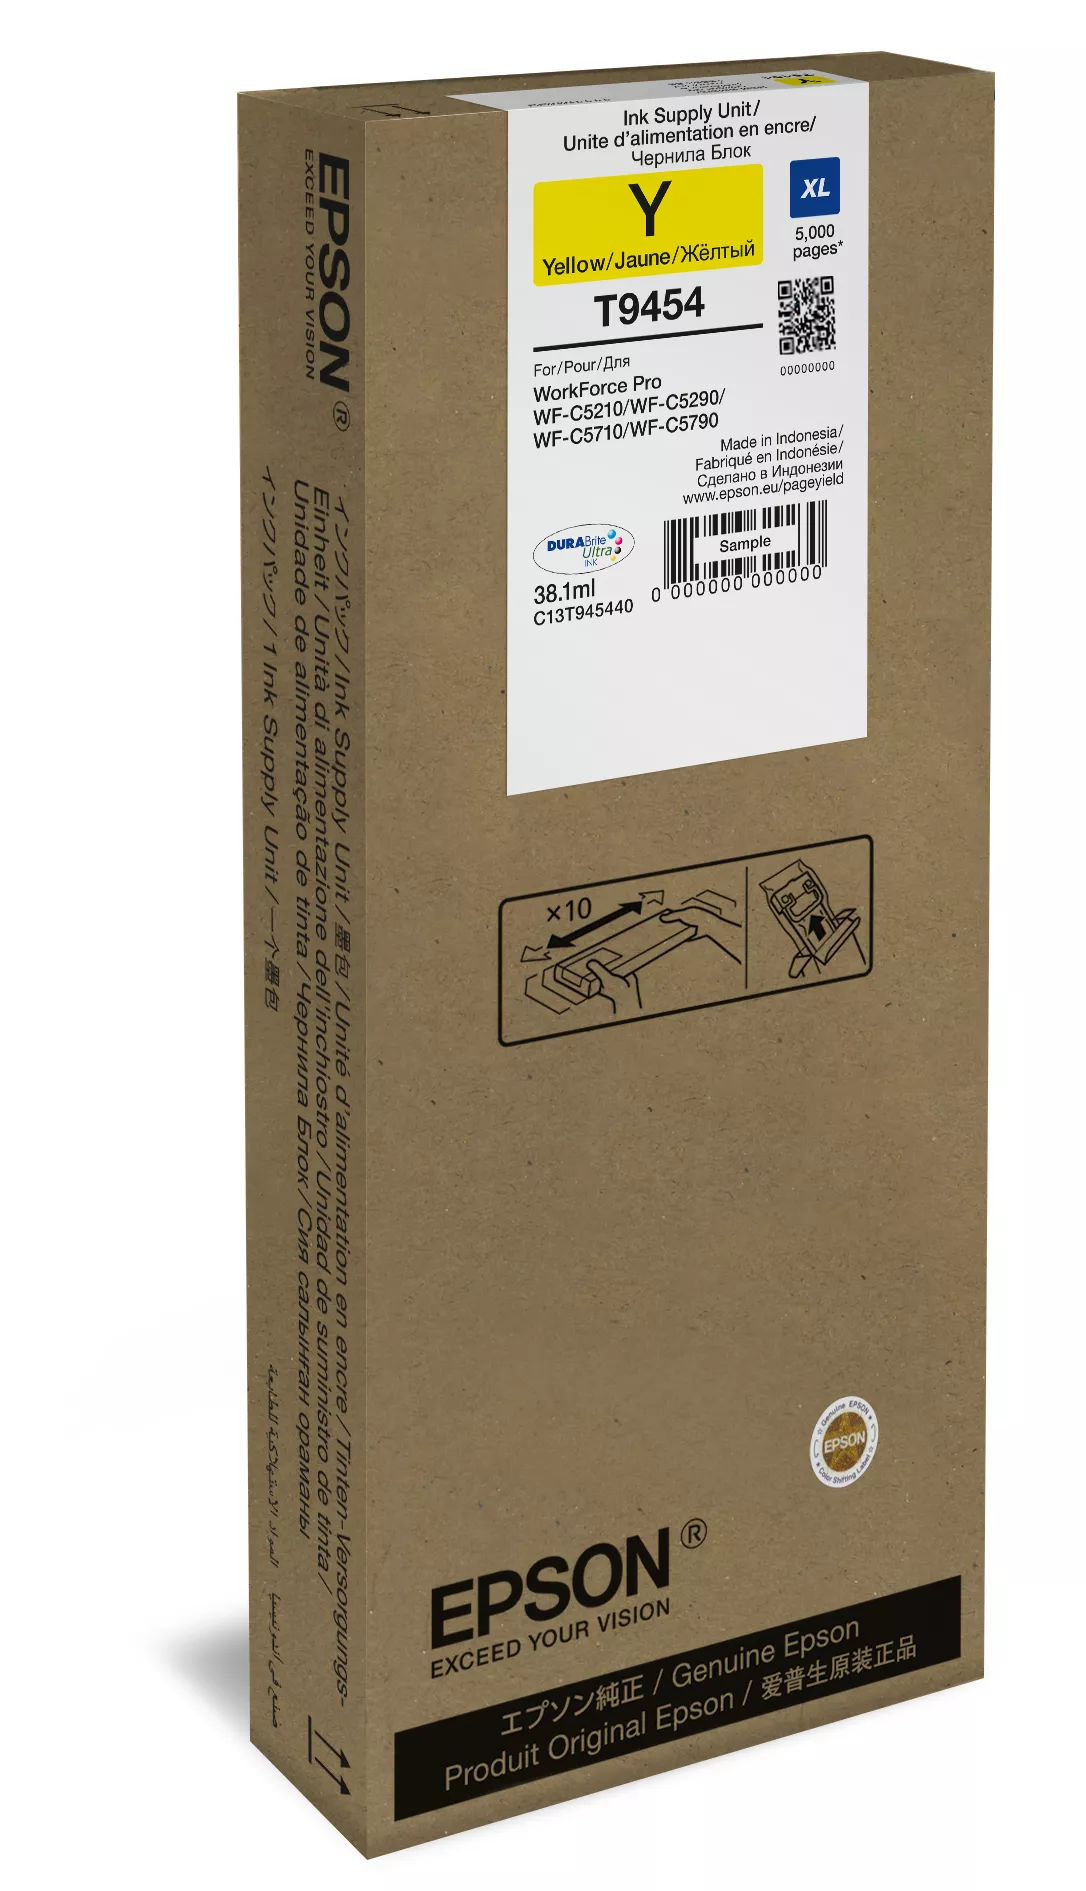 Vente EPSON WF-C5xxx Series Ink Cartridge XL Yellow 5000s Epson au meilleur prix - visuel 2